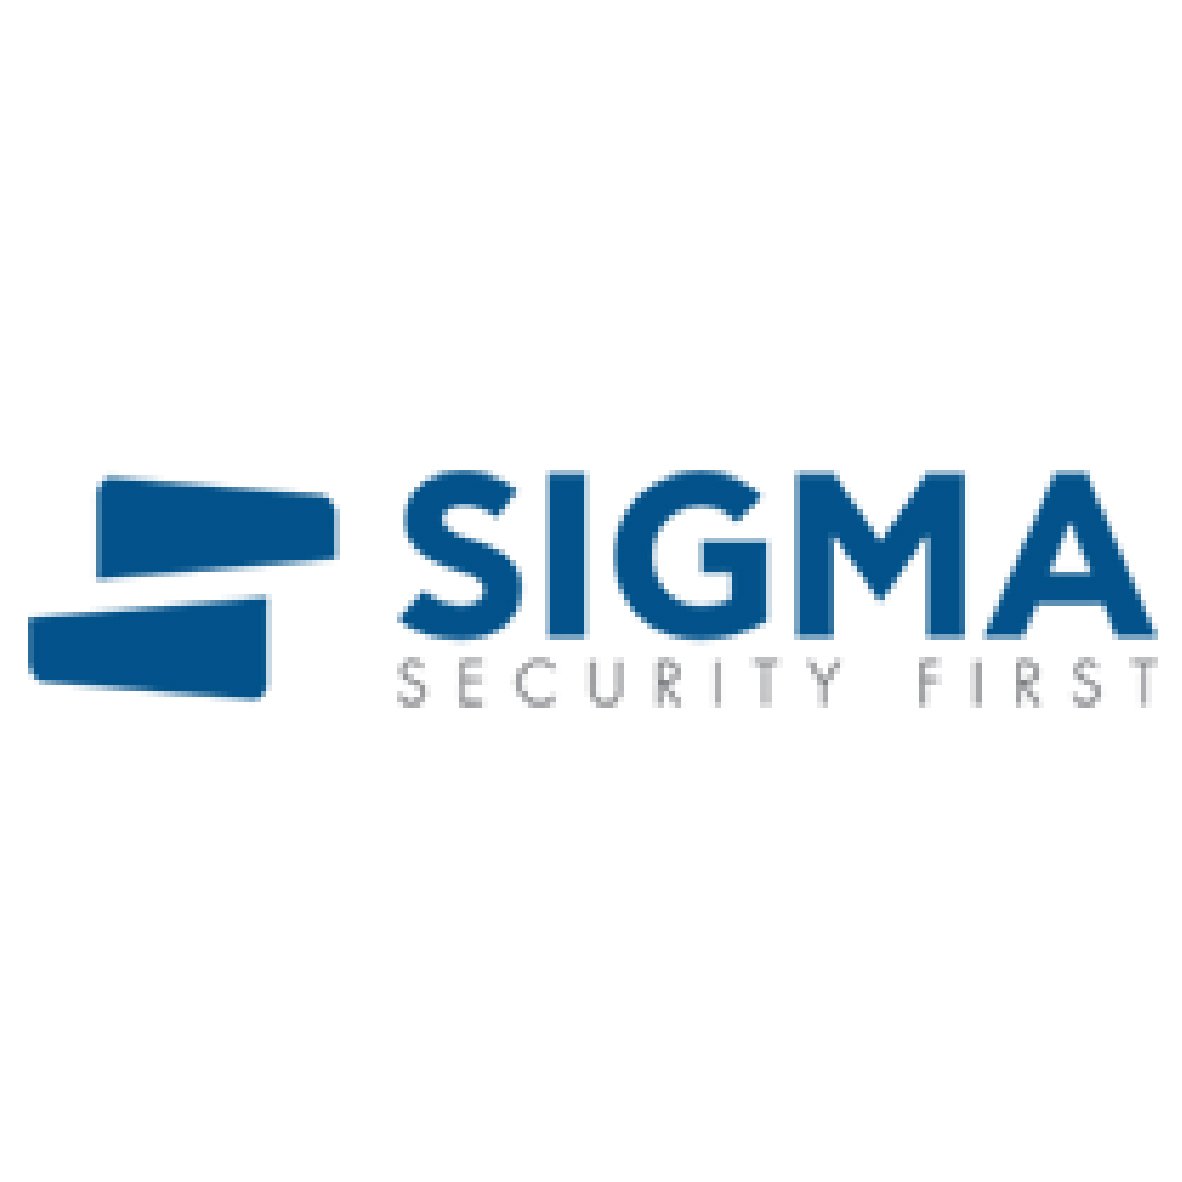 security-logos-07